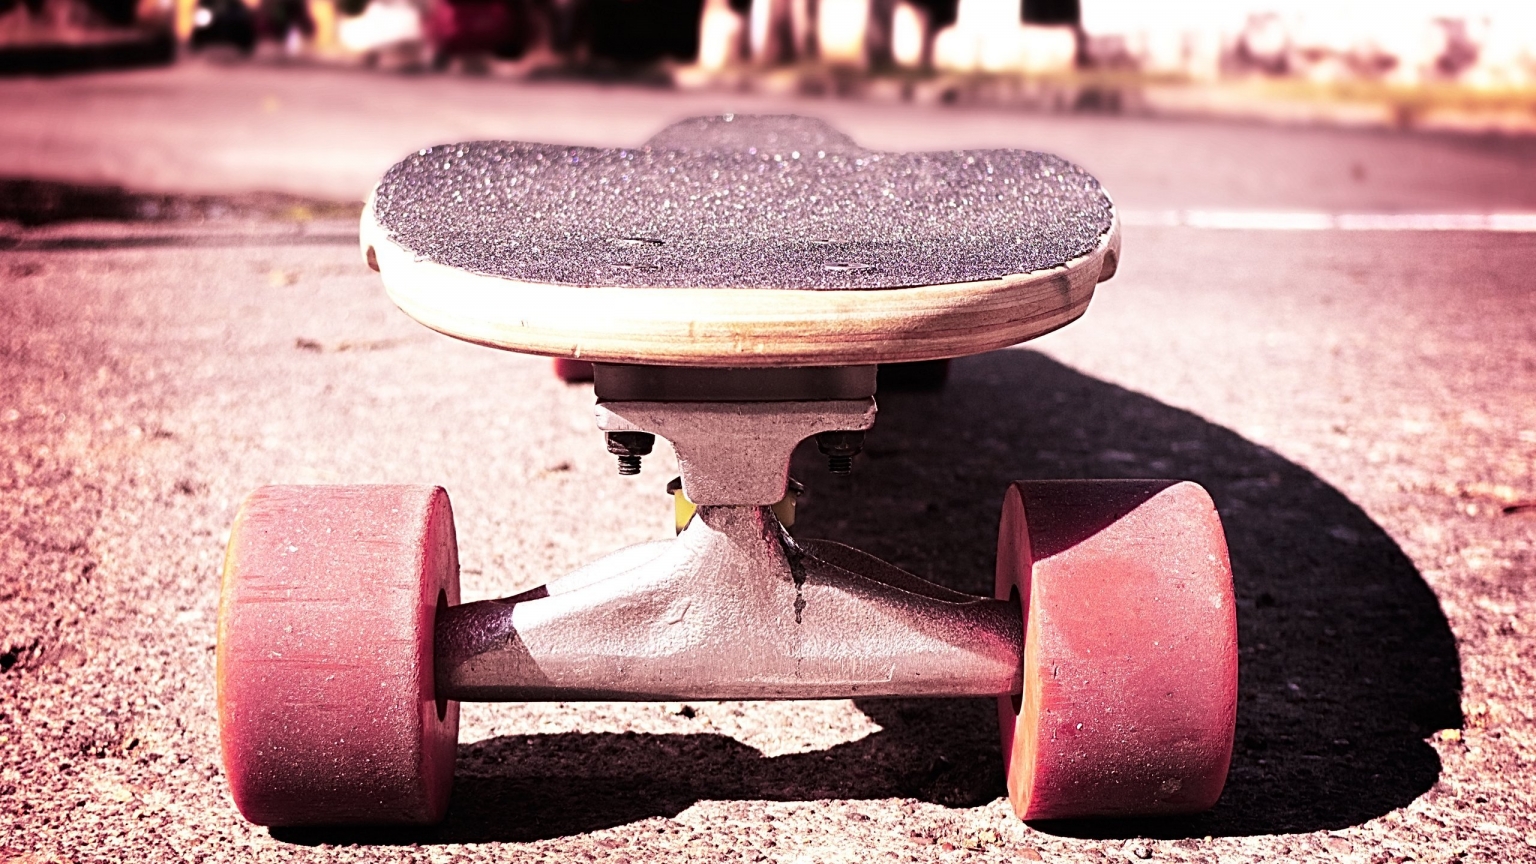 Cool skateboard for 1536 x 864 HDTV resolution